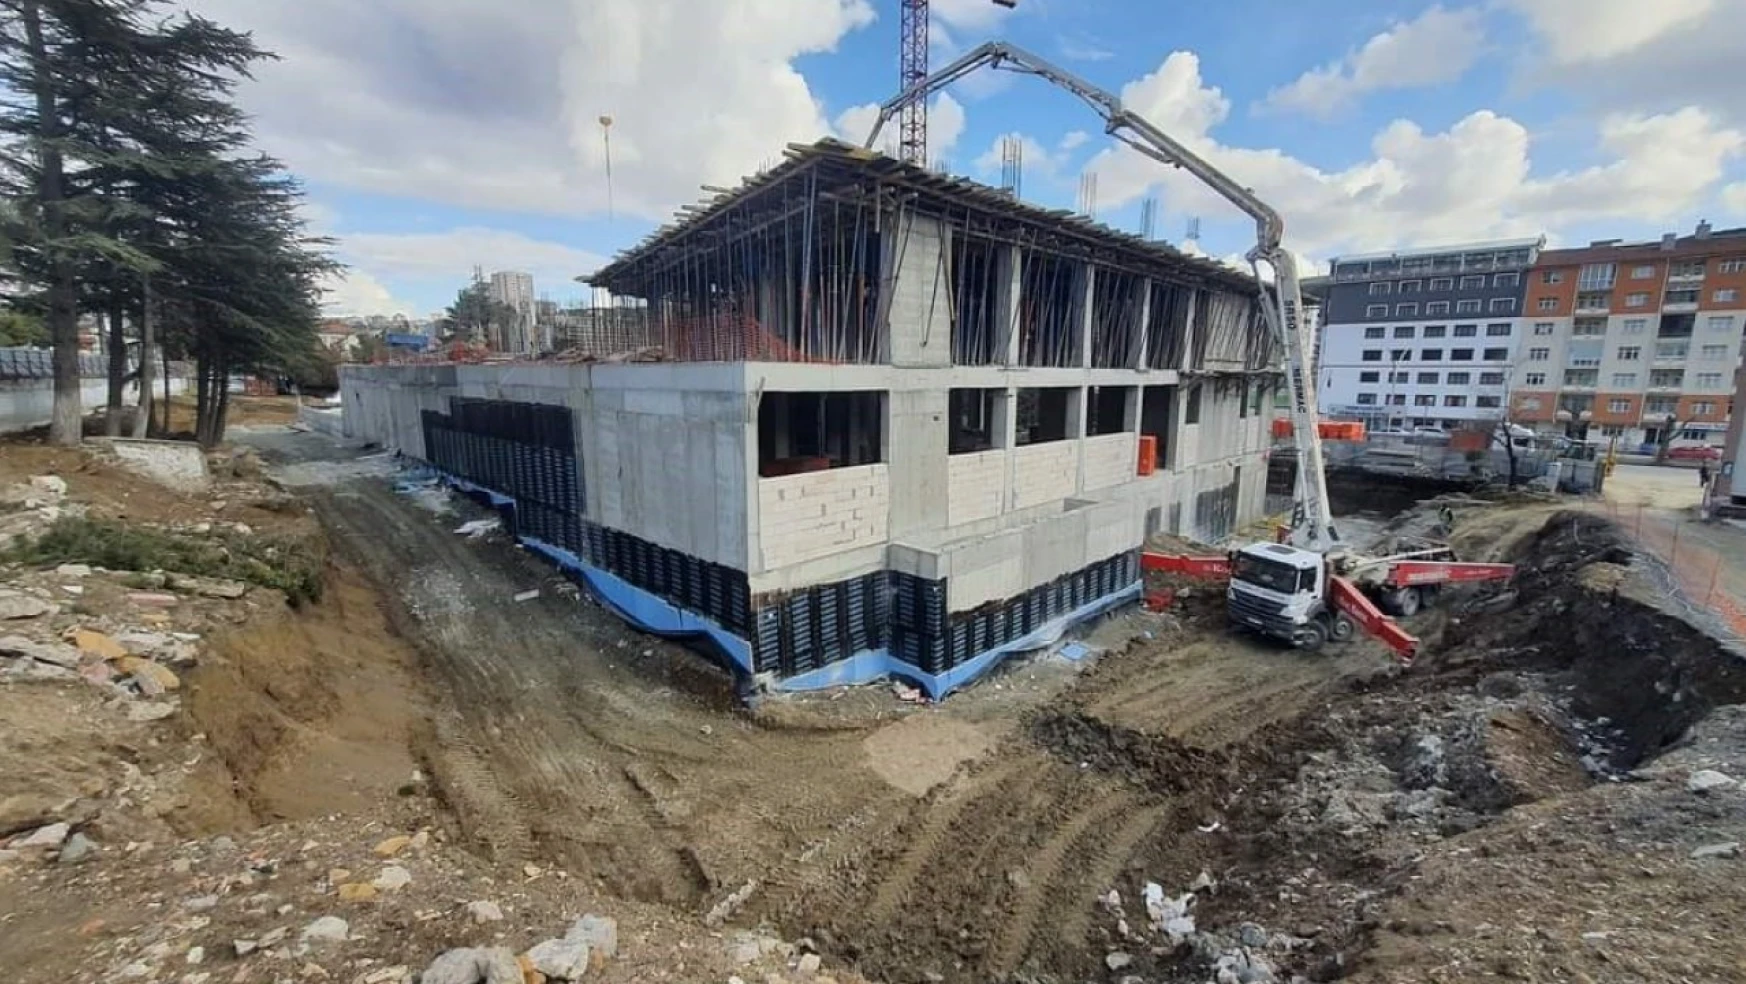 Yozgat İl Halk Kütüphanesi inşaatı hızla yükseliyor